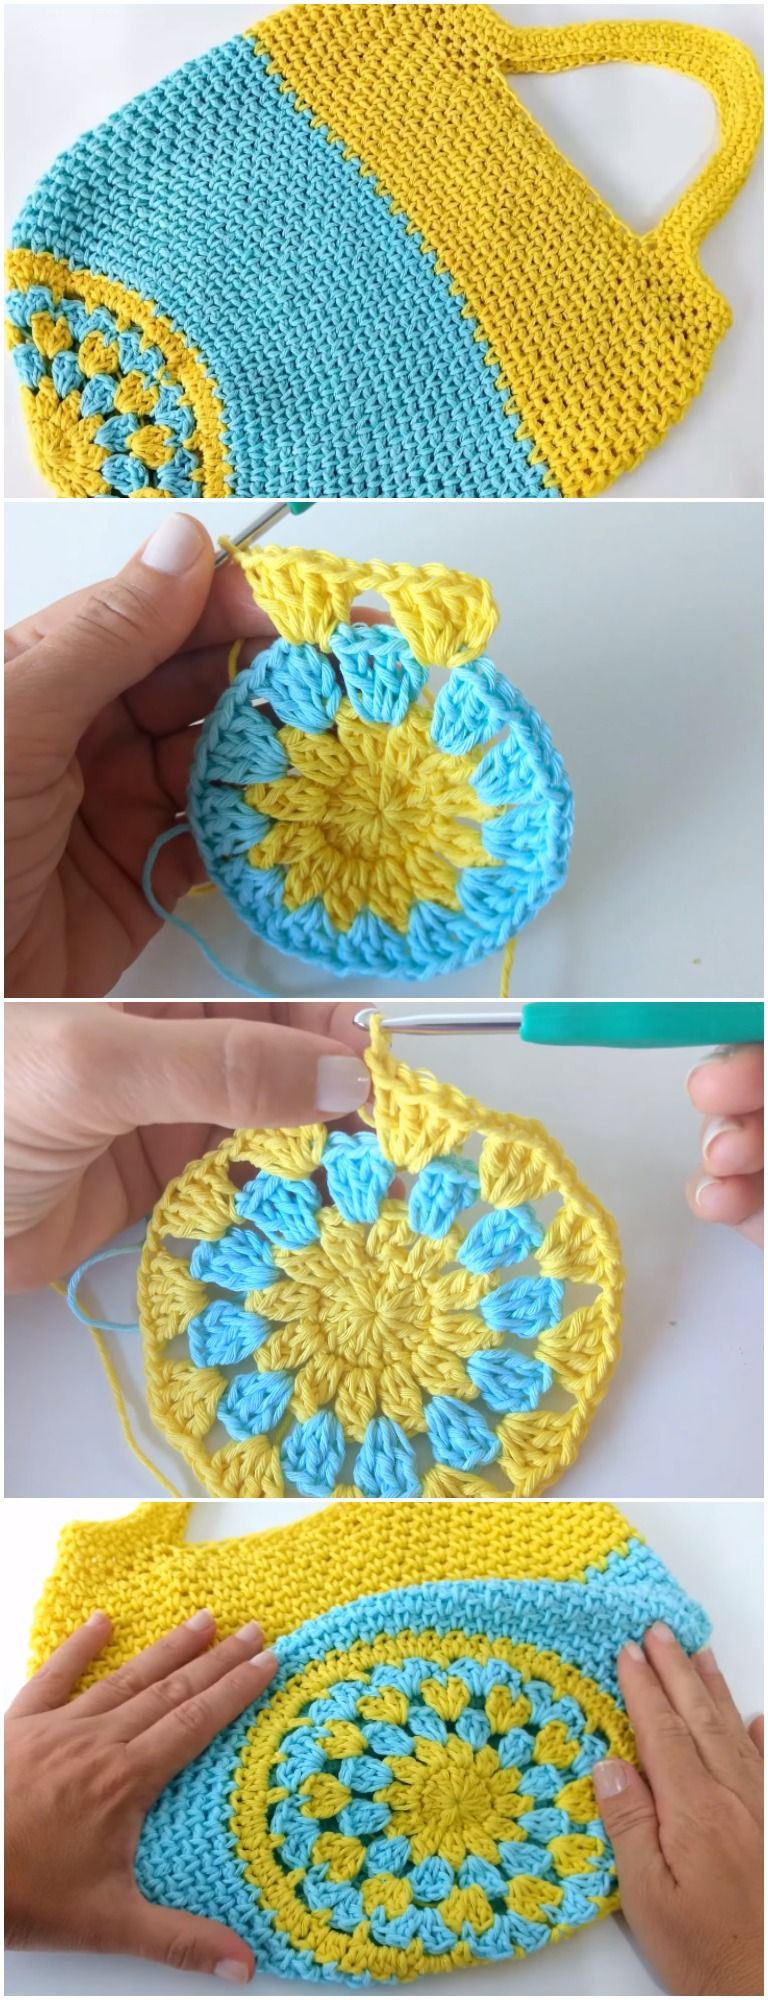 Crochet-Beautiful-Market-Bag-Free-Pattern-Video.jpg